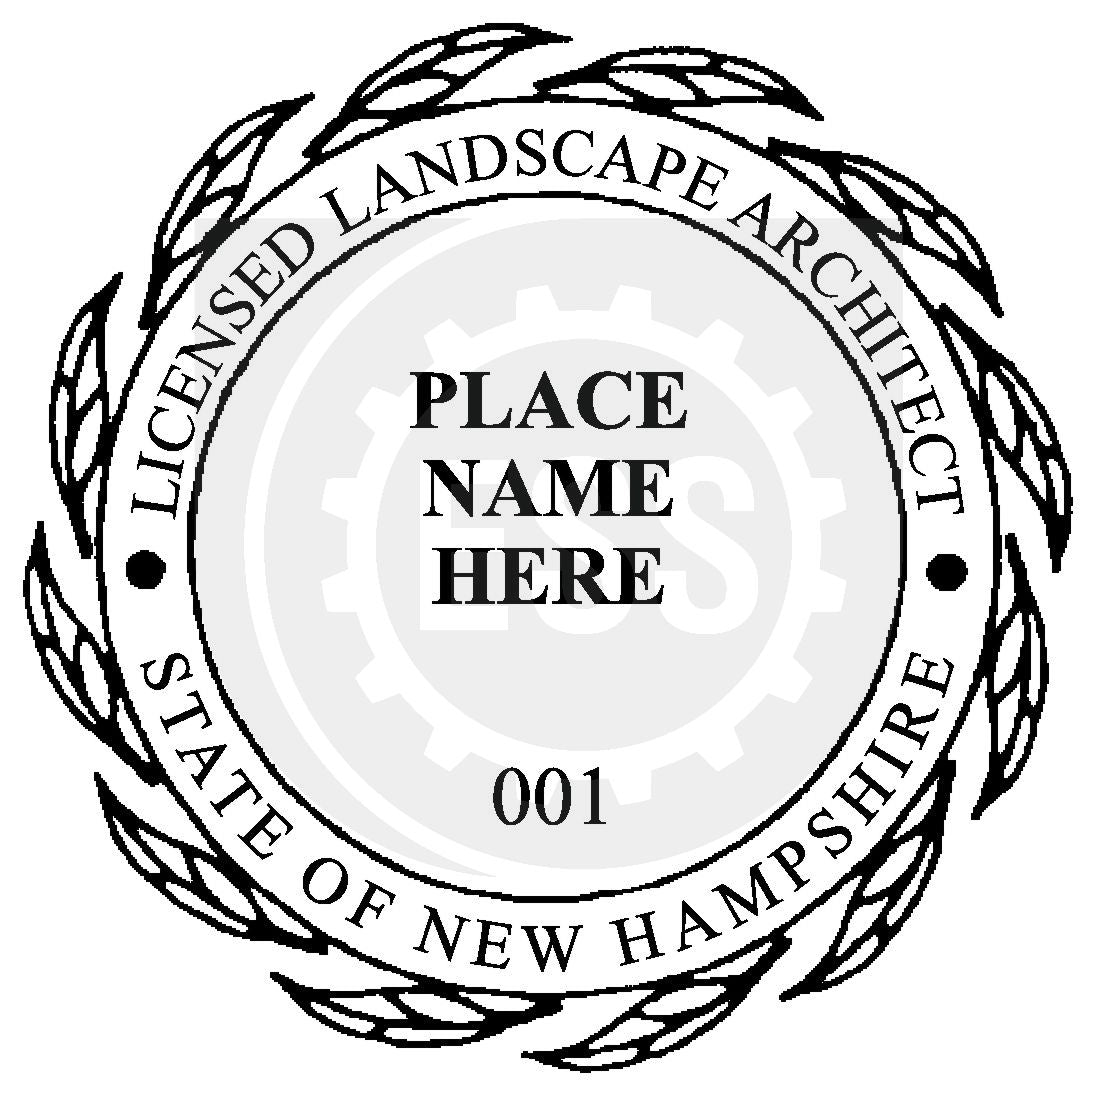 New Hampshire Landscape Architect Seal Setup